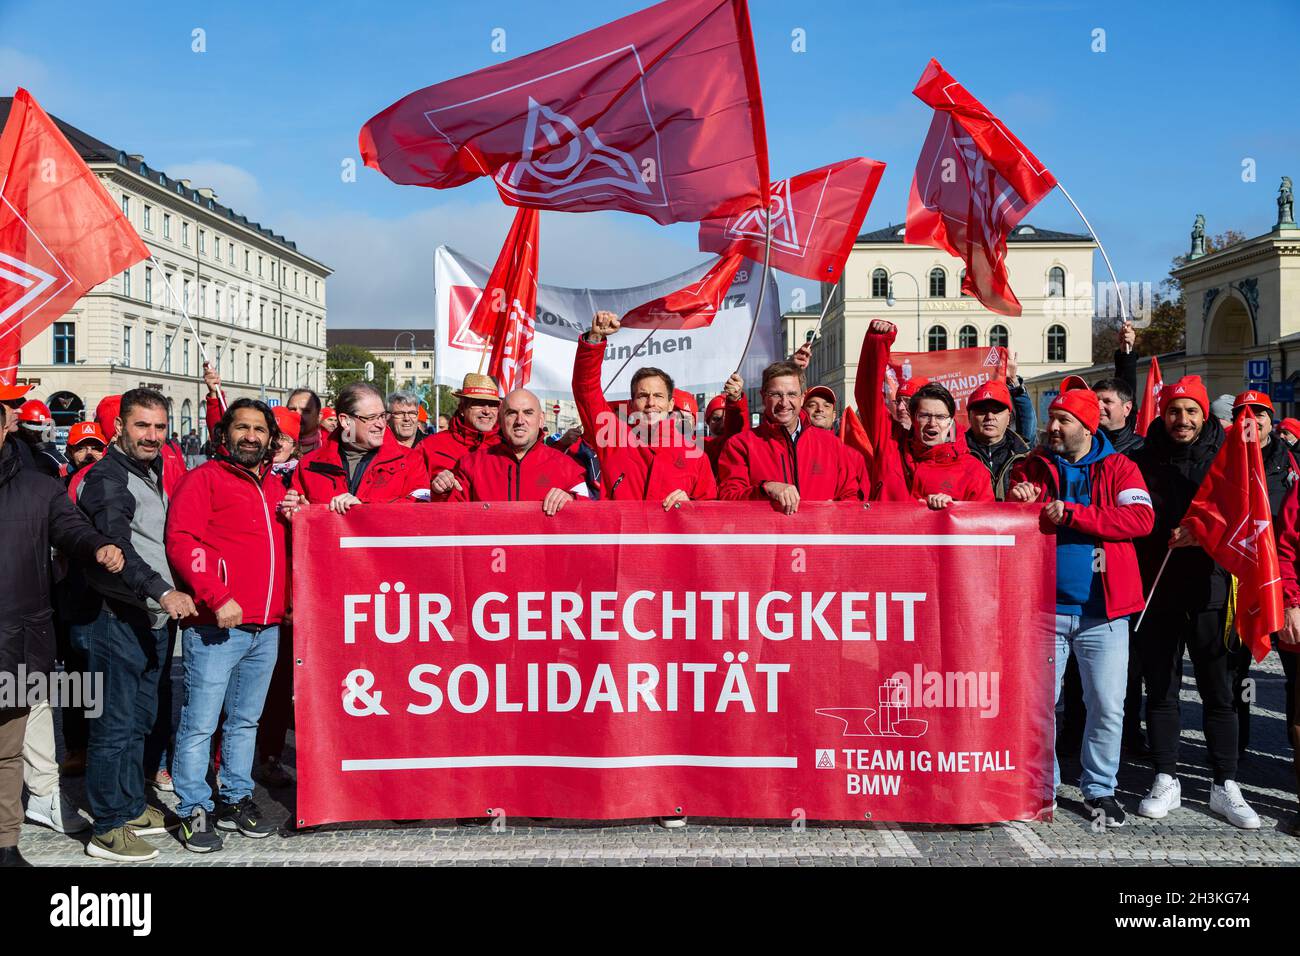 Am 29. Oktober 2021 sammeln sich ein paar wenige Hundert IG Metaller in München um von verschiedenen Fingern zu einer Kundgebung am Odeonsplatz zu demontieren. Sie forden von den Koalitionsverhandlern von SPD, Bündnis 90 / die Grünen und FDP, unter anderem Klimagerechtigkeit, faire Löhne, ein Ende der Schuldenbresse und keine Flexibilisierung der Arbeitszeiten. - am 29. Oktober 2021 versammelten sich einige Hundert Gewerkschafter der IG Metall in München, um vor der Fragestunde von CSU, SPD, Grünen und FDP zu protestieren. Sie fordern Klimagerechtigkeit, faire Löhne, ein Ende der Schuldenbremse und kein Fle Stockfoto